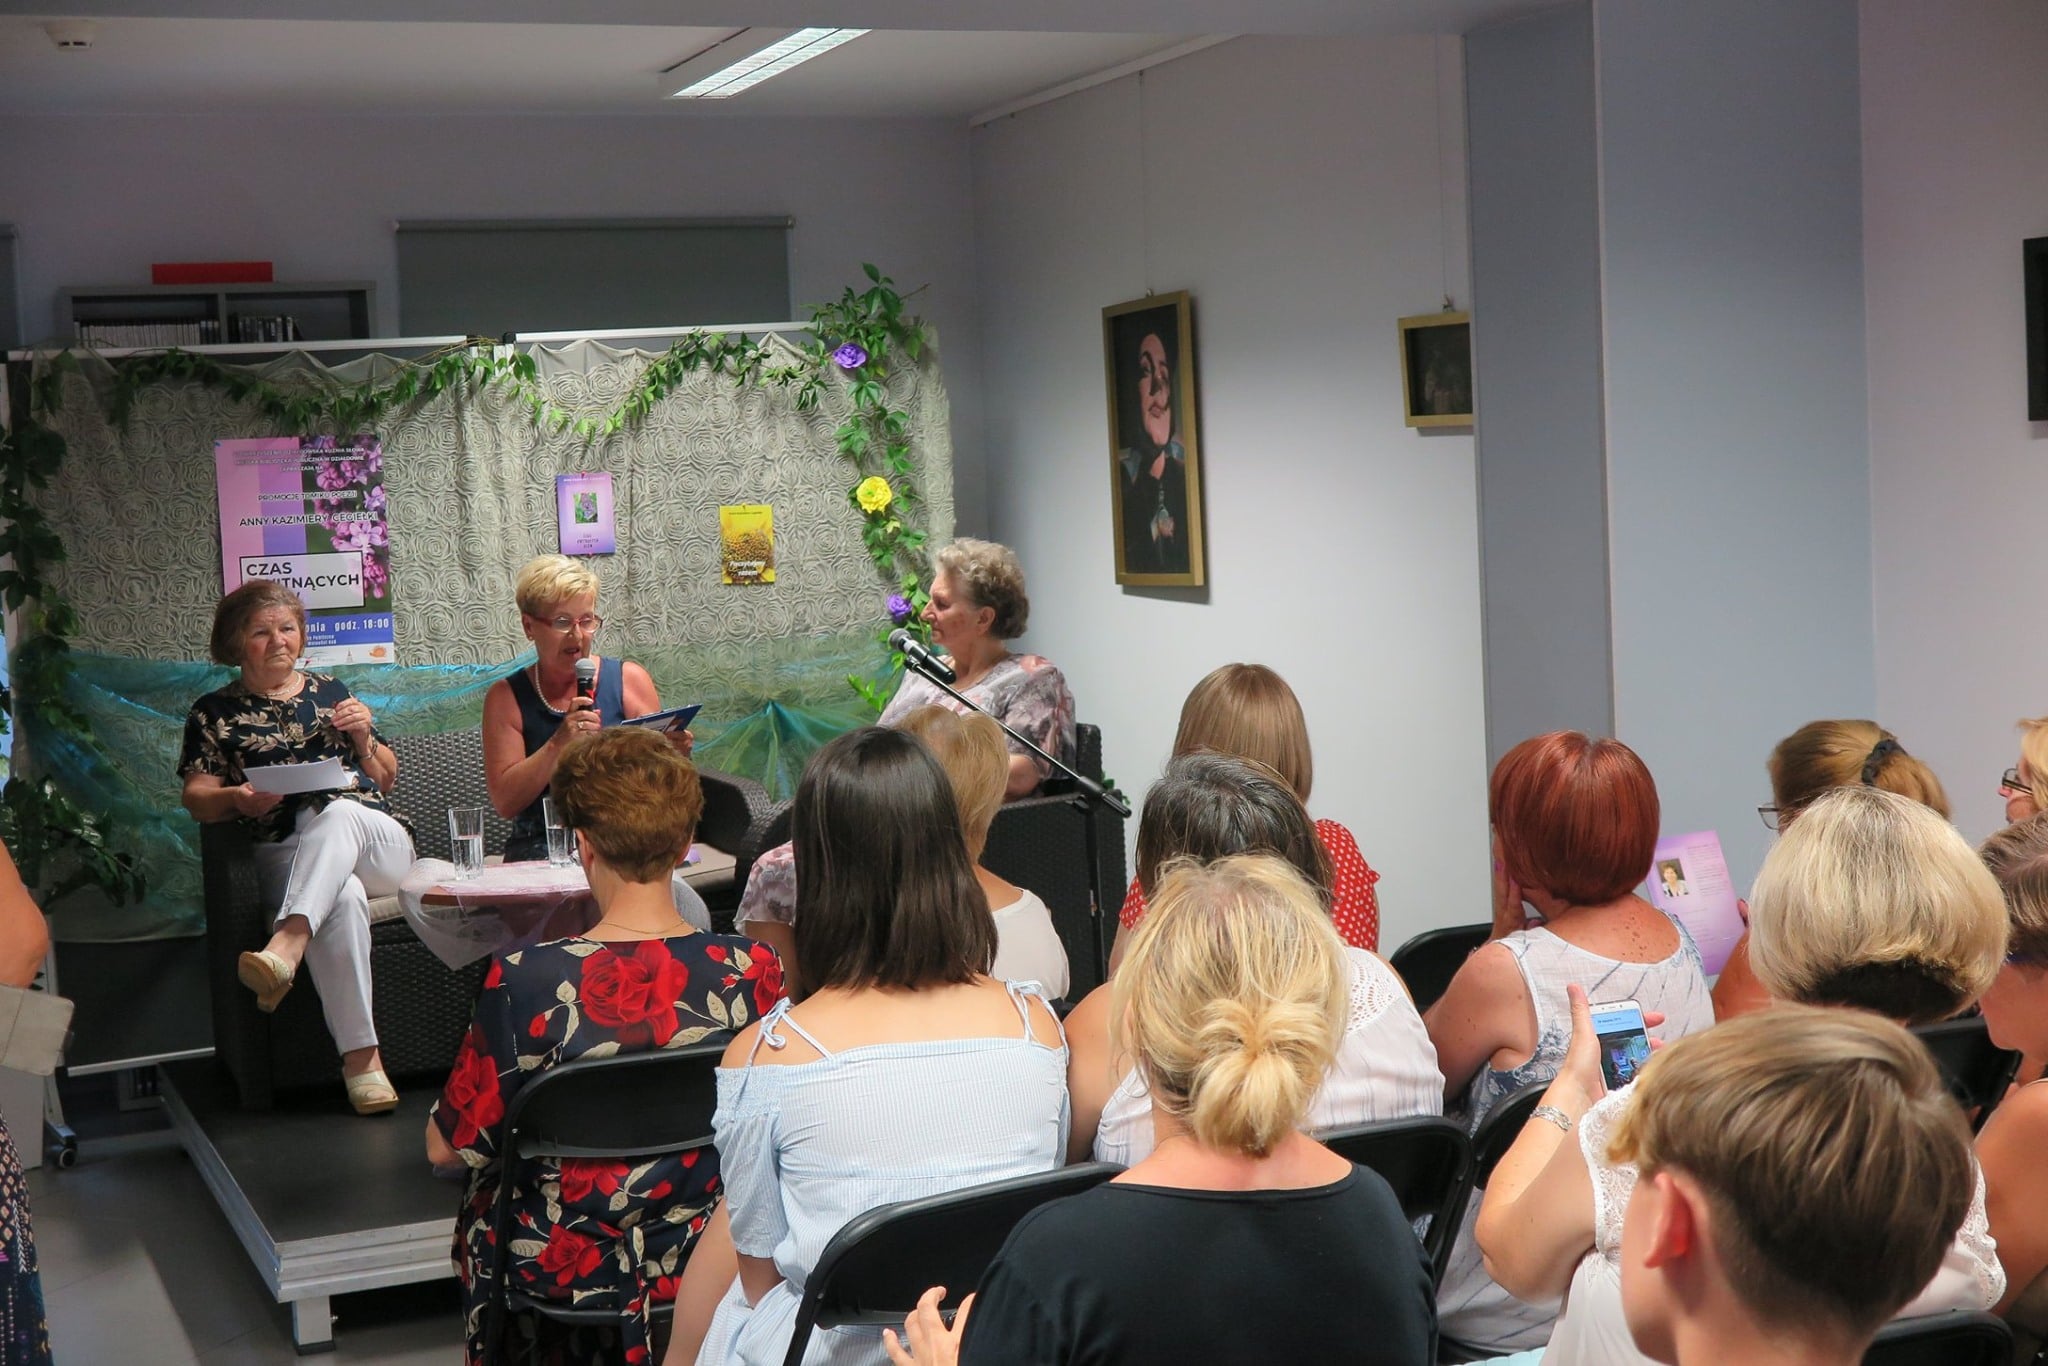 Wnętrze biblioteki, promocja tomiku poezji Anny Kazimiery Cegiełki, na krzesełkach siedzą wszyscy goście.